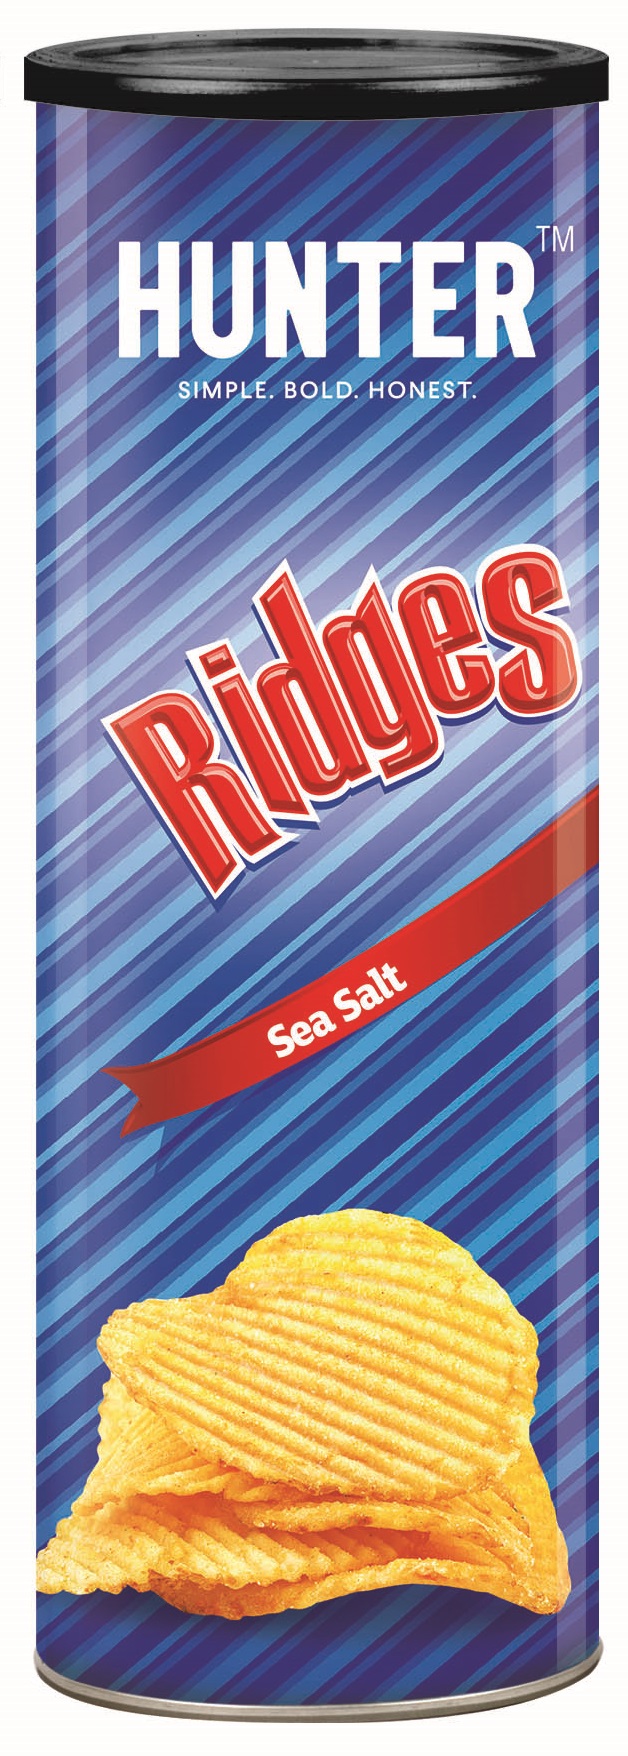 Hunter Foods Ridges Sea Salt 12 units per case 75 g